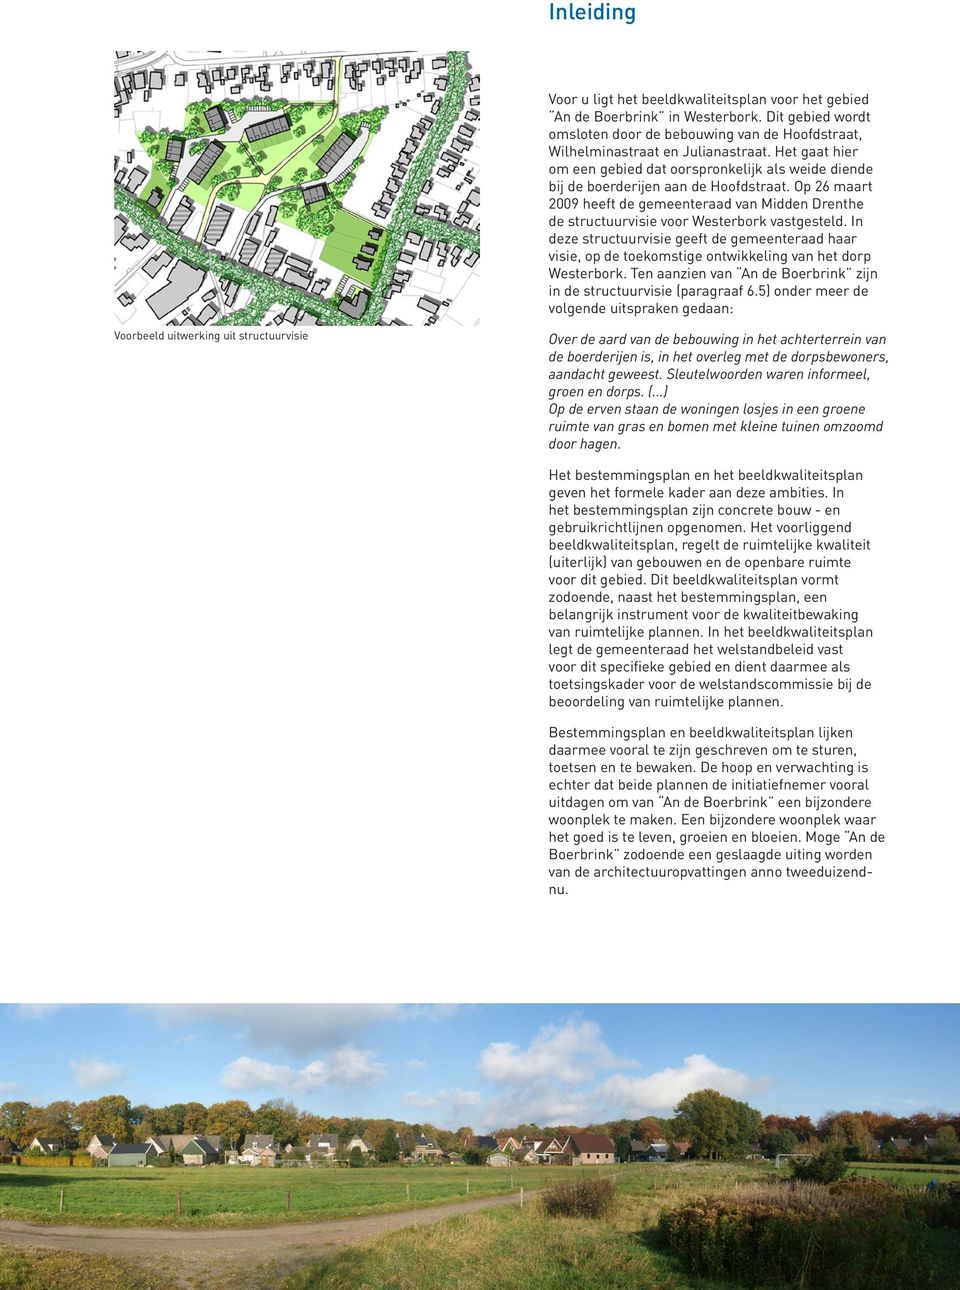 Op 26 maart 2009 heeft de gemeenteraad van Midden Drenthe de structuurvisie voor Westerbork vastgesteld.